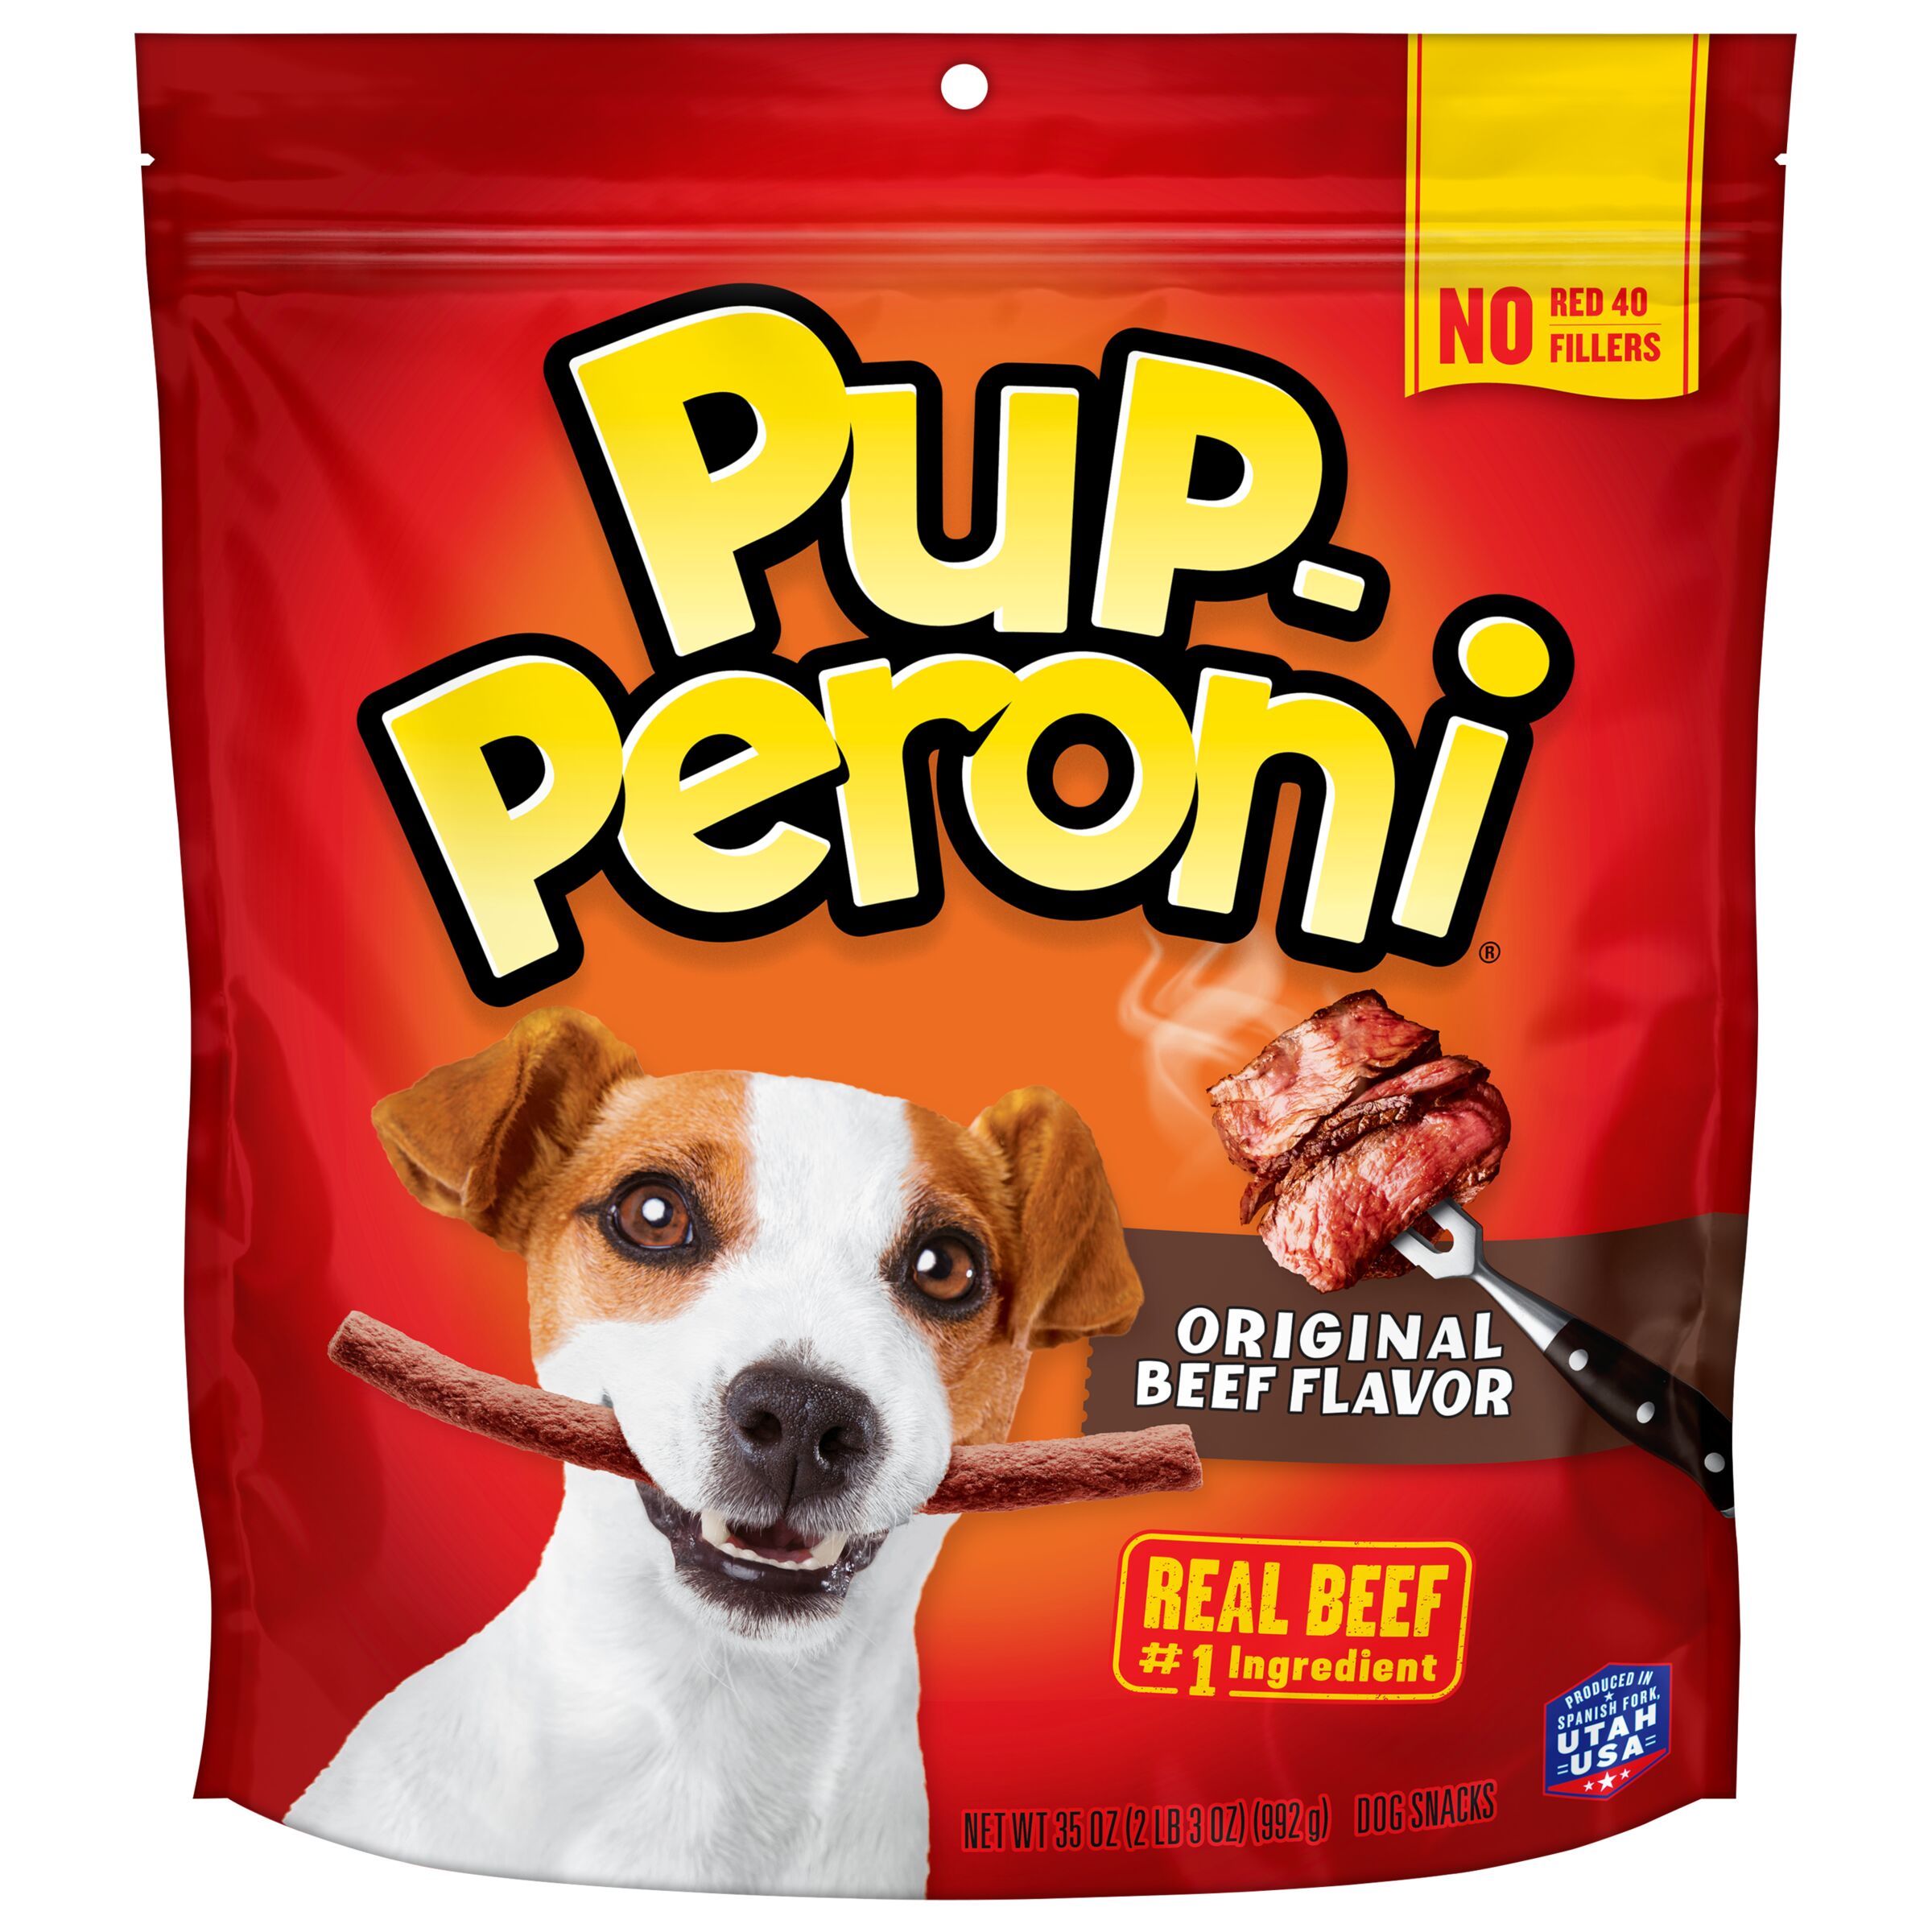 Pup-Peroni Dog Snacks, Original Beef Flavor (46 oz.)